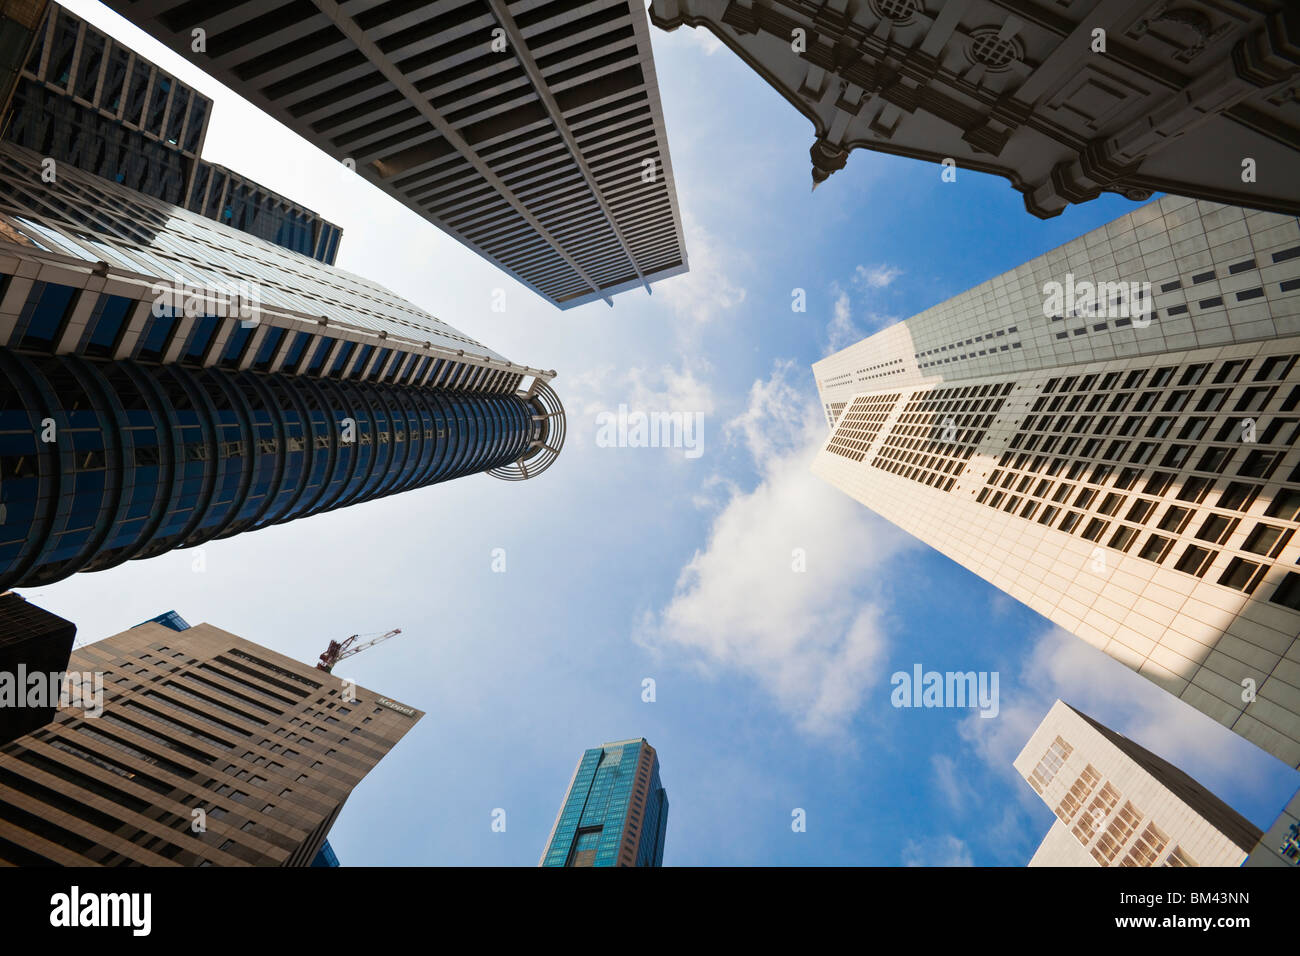 Gratte-ciel dans le quartier financier de Raffles Place, Singapour Banque D'Images